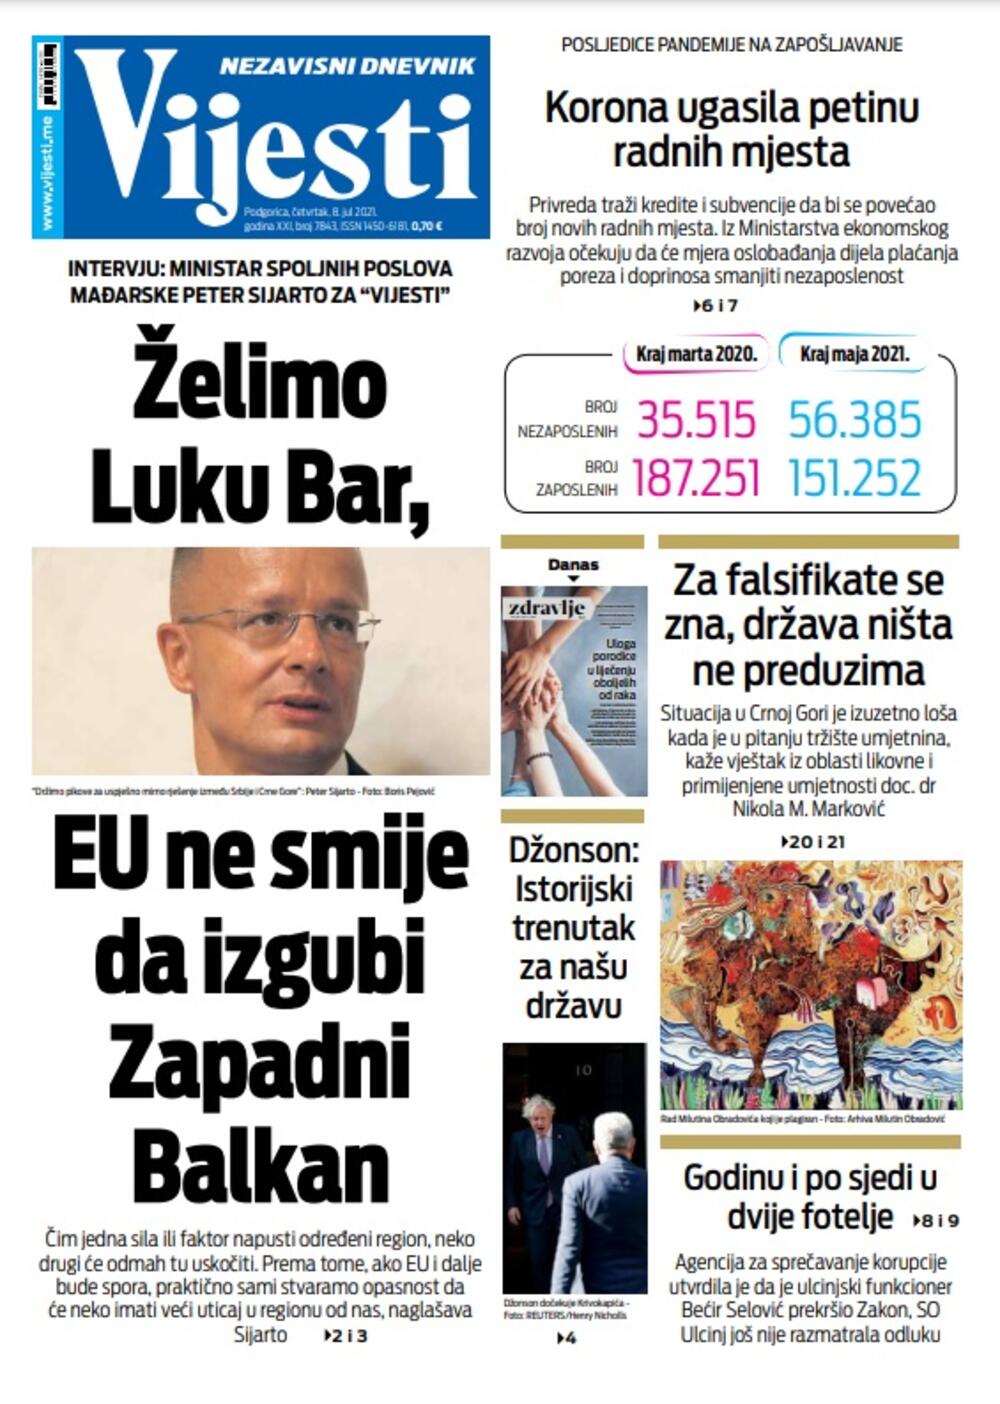 Naslovna strana "Vijesti" za 8. jul 2021., Foto: Vijesti